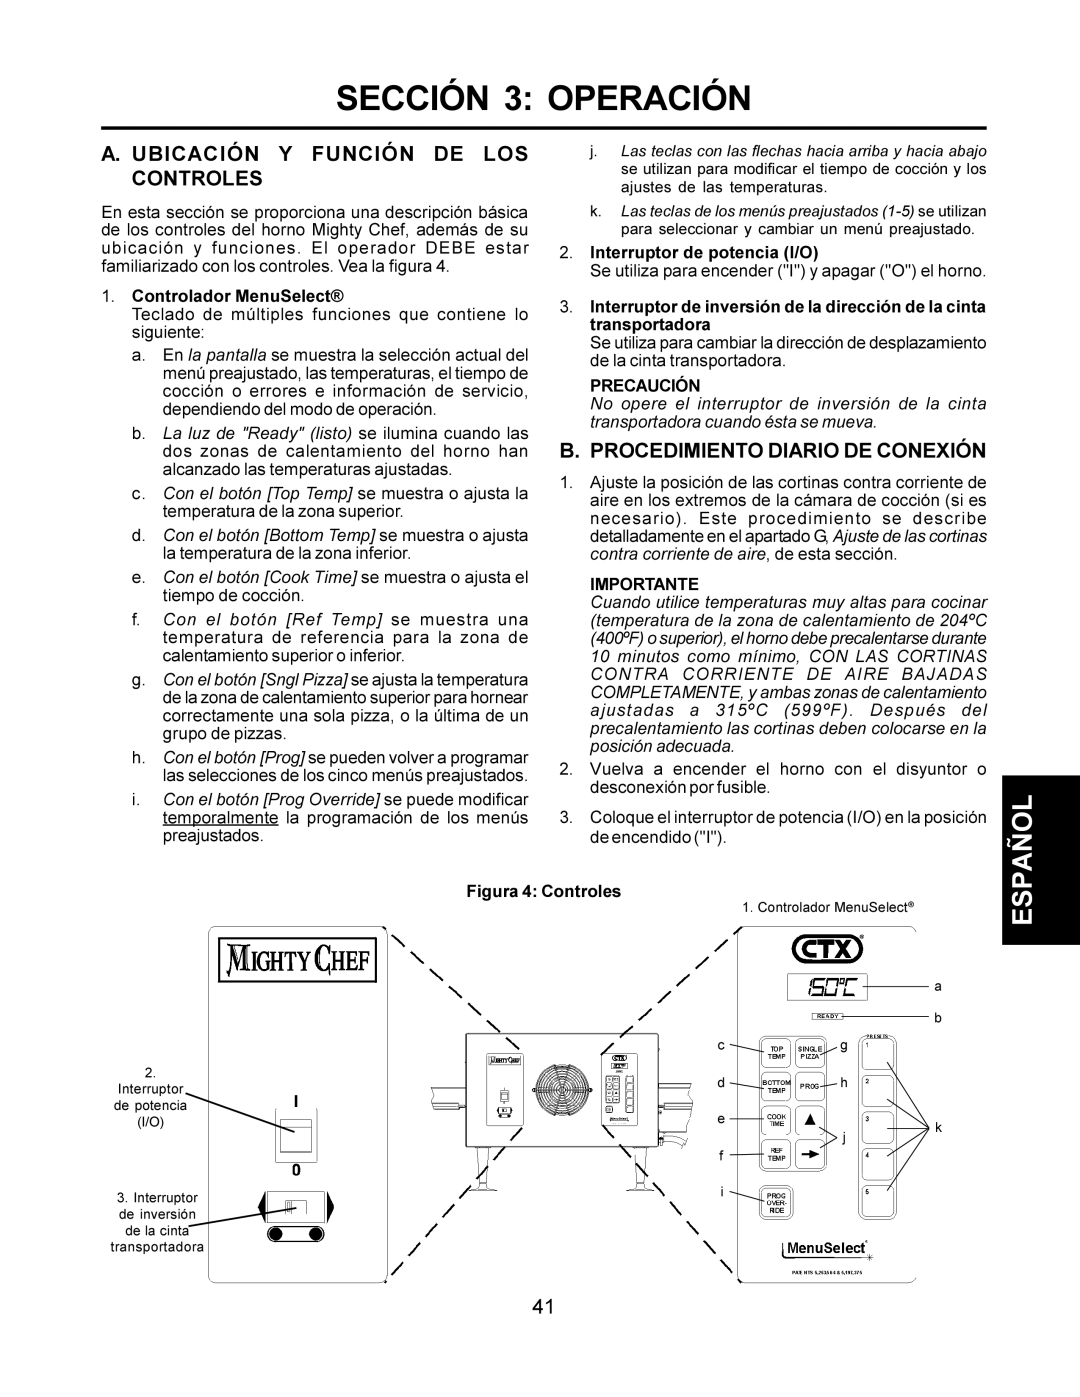 CTX TCO21140077, TCO21140063 Sección 3 Operación, Ubicación Y Función DE LOS Controles, Procedimiento Diario DE Conexión 